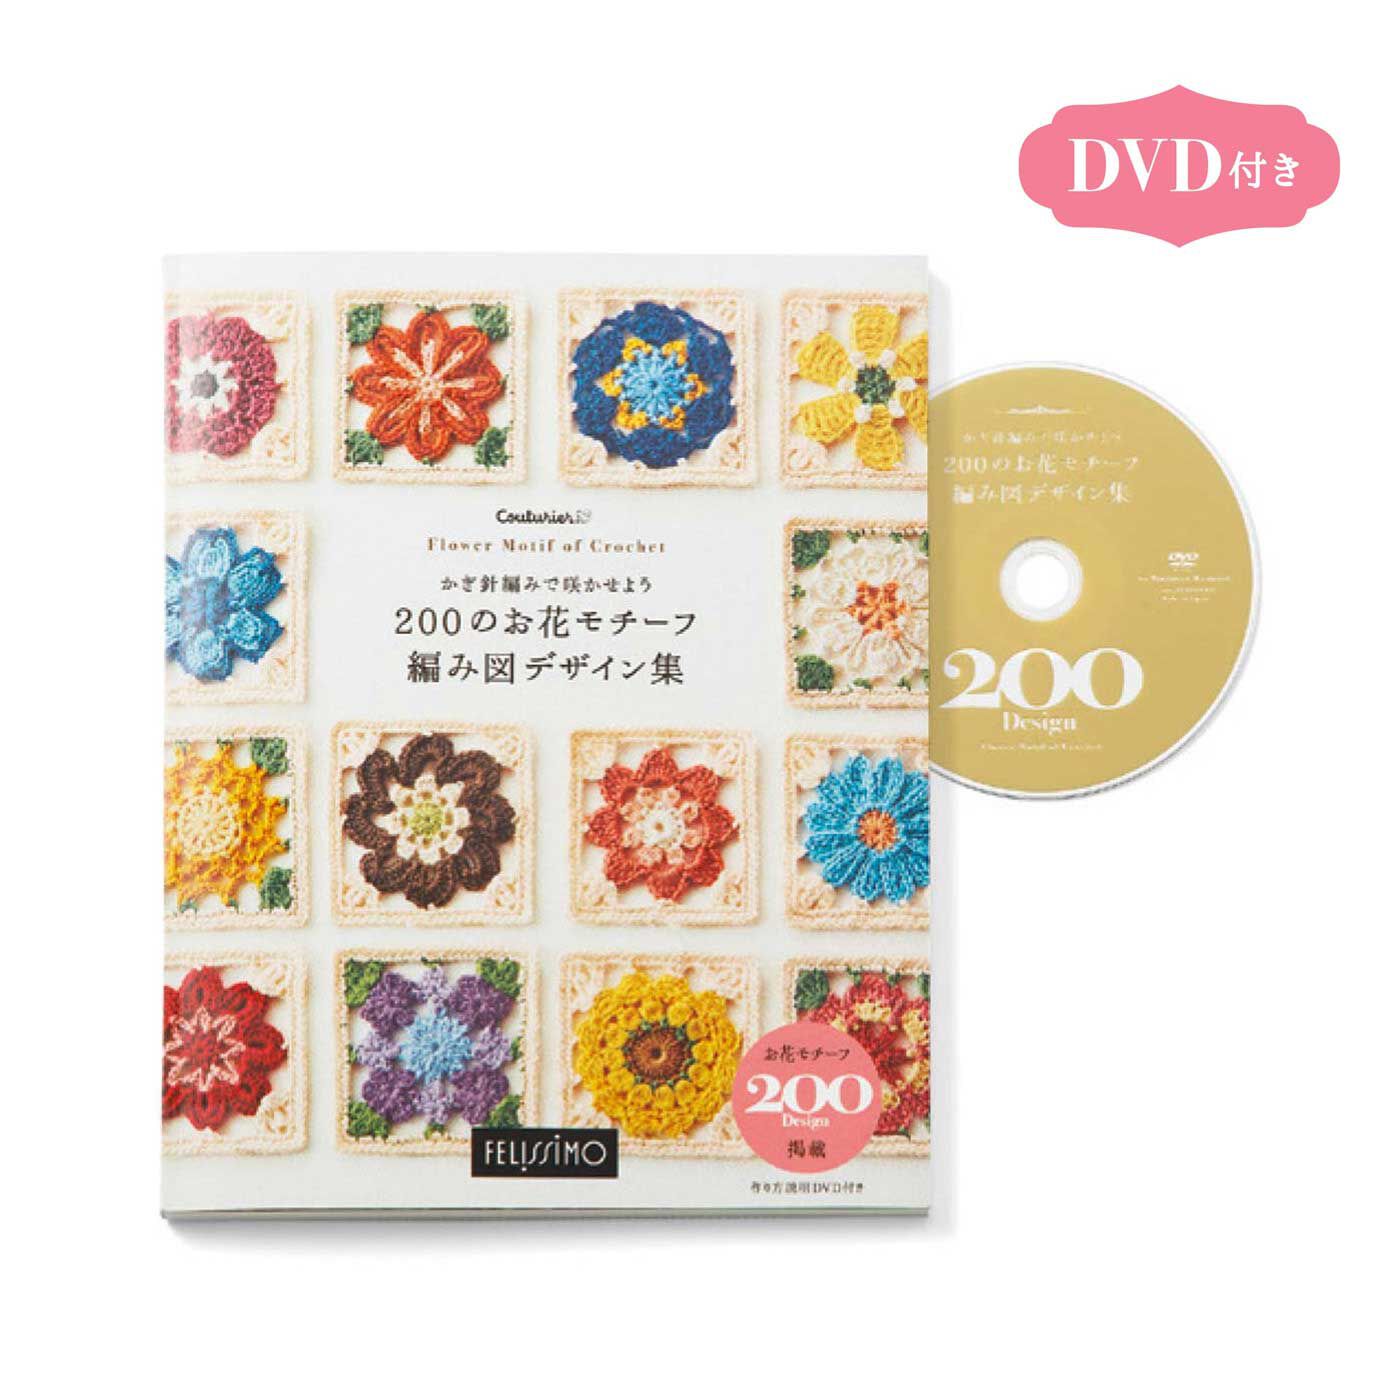 クチュリエ|かぎ針編みで咲かせよう 200のお花モチーフ 編み図デザイン集|●本1冊と、DVDが付いています。